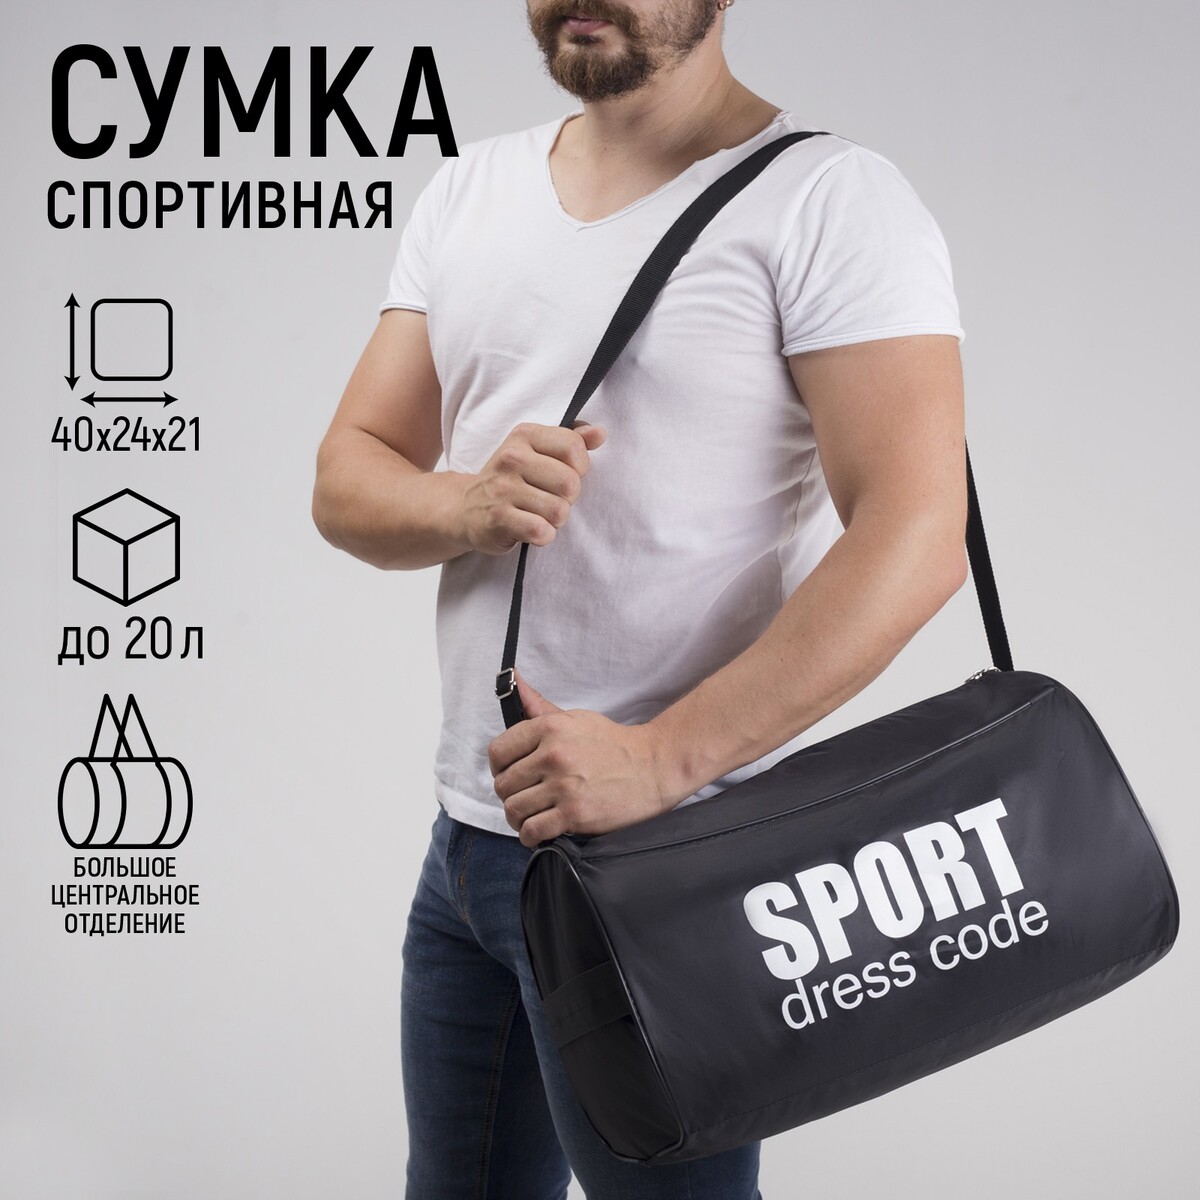 Сумка спортивная sport- dress code на молнии, наружный карман, цвет черный сумка спортивная для коньков 40 32 20 см с зеленым